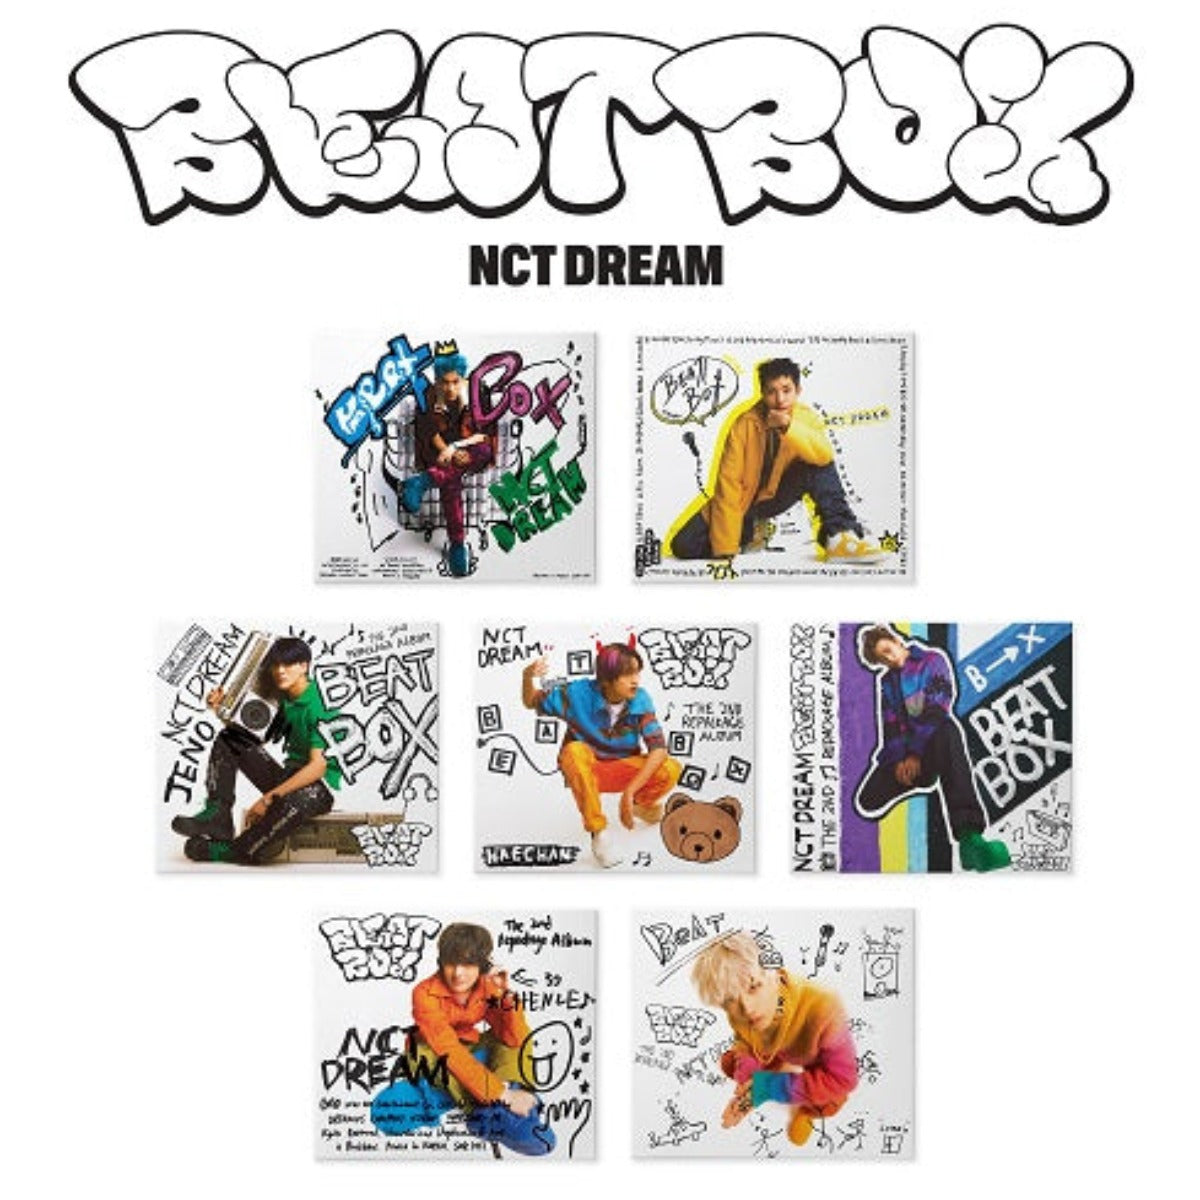 NCT DREAM Vol. 2 Repackage - Beatbox (Digipack Version)